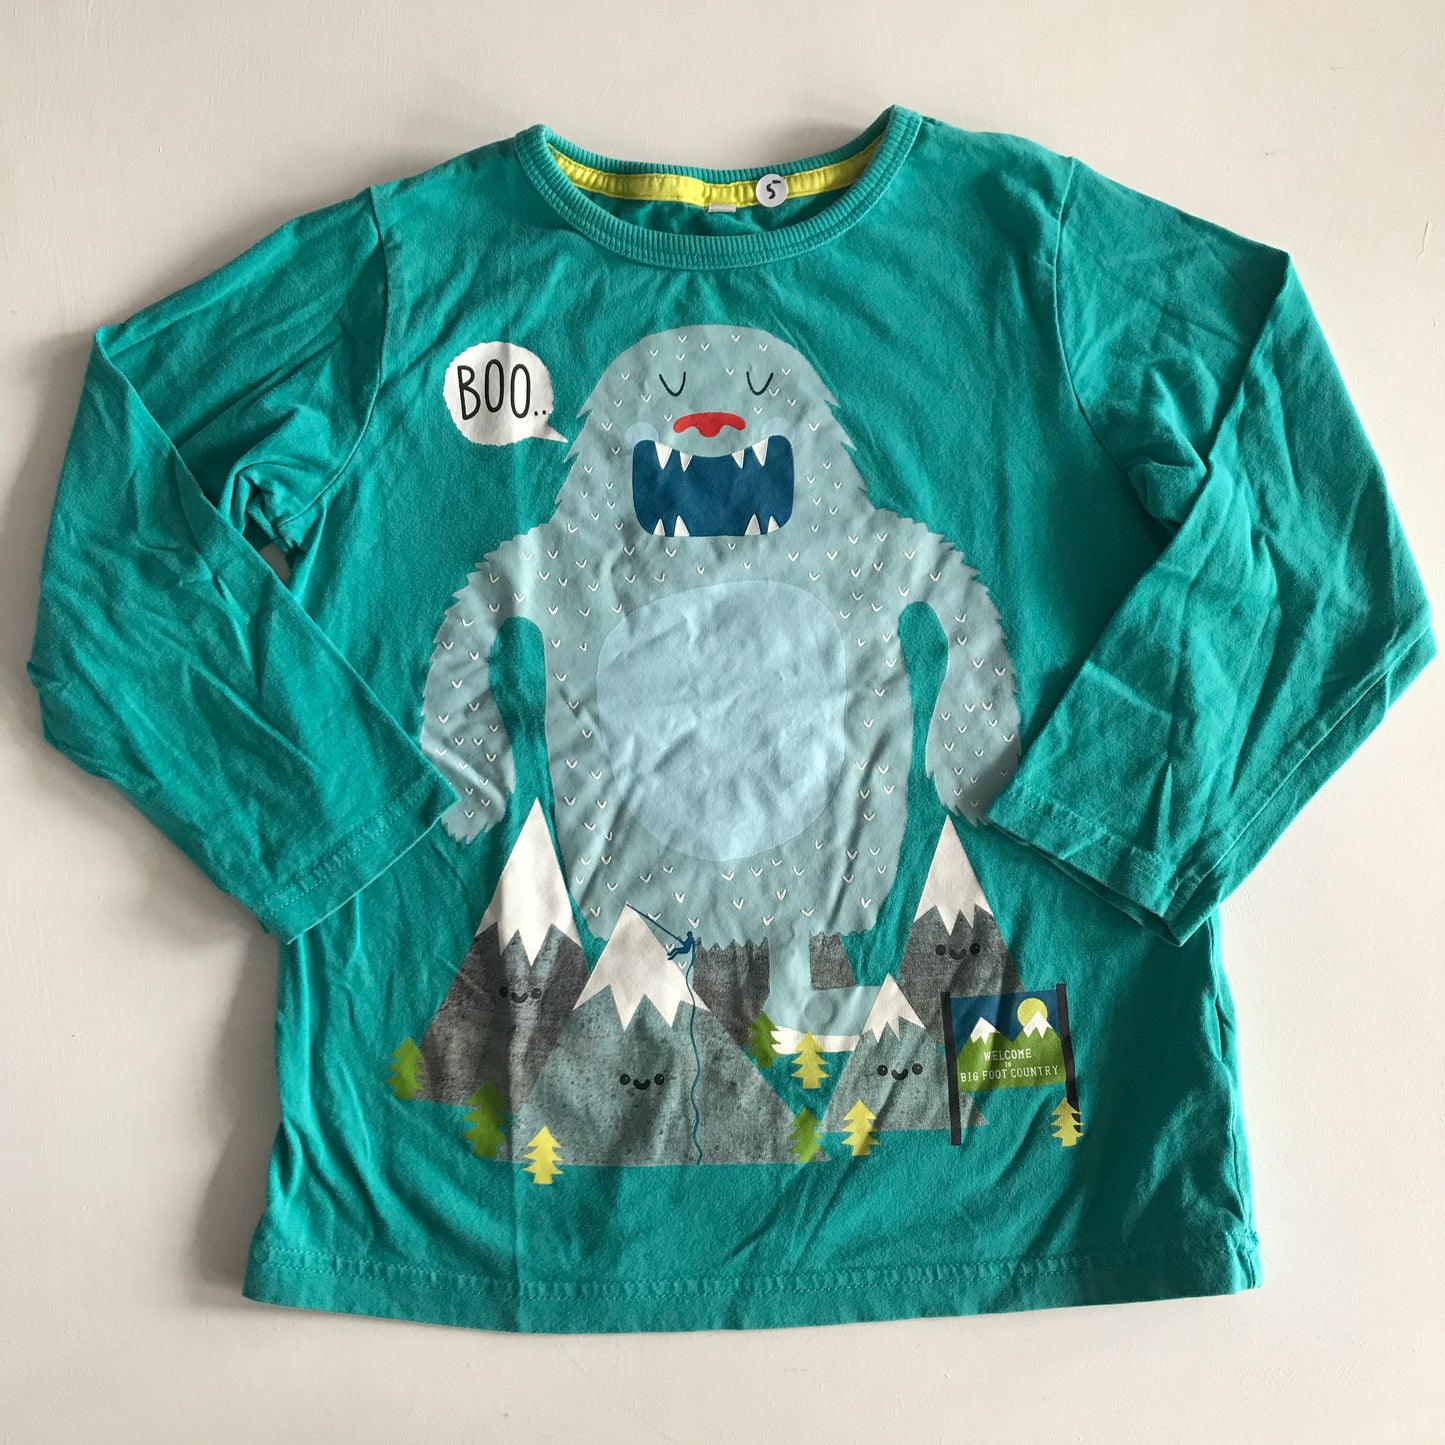 T-shirt - Turquoise Yeti - Age 5